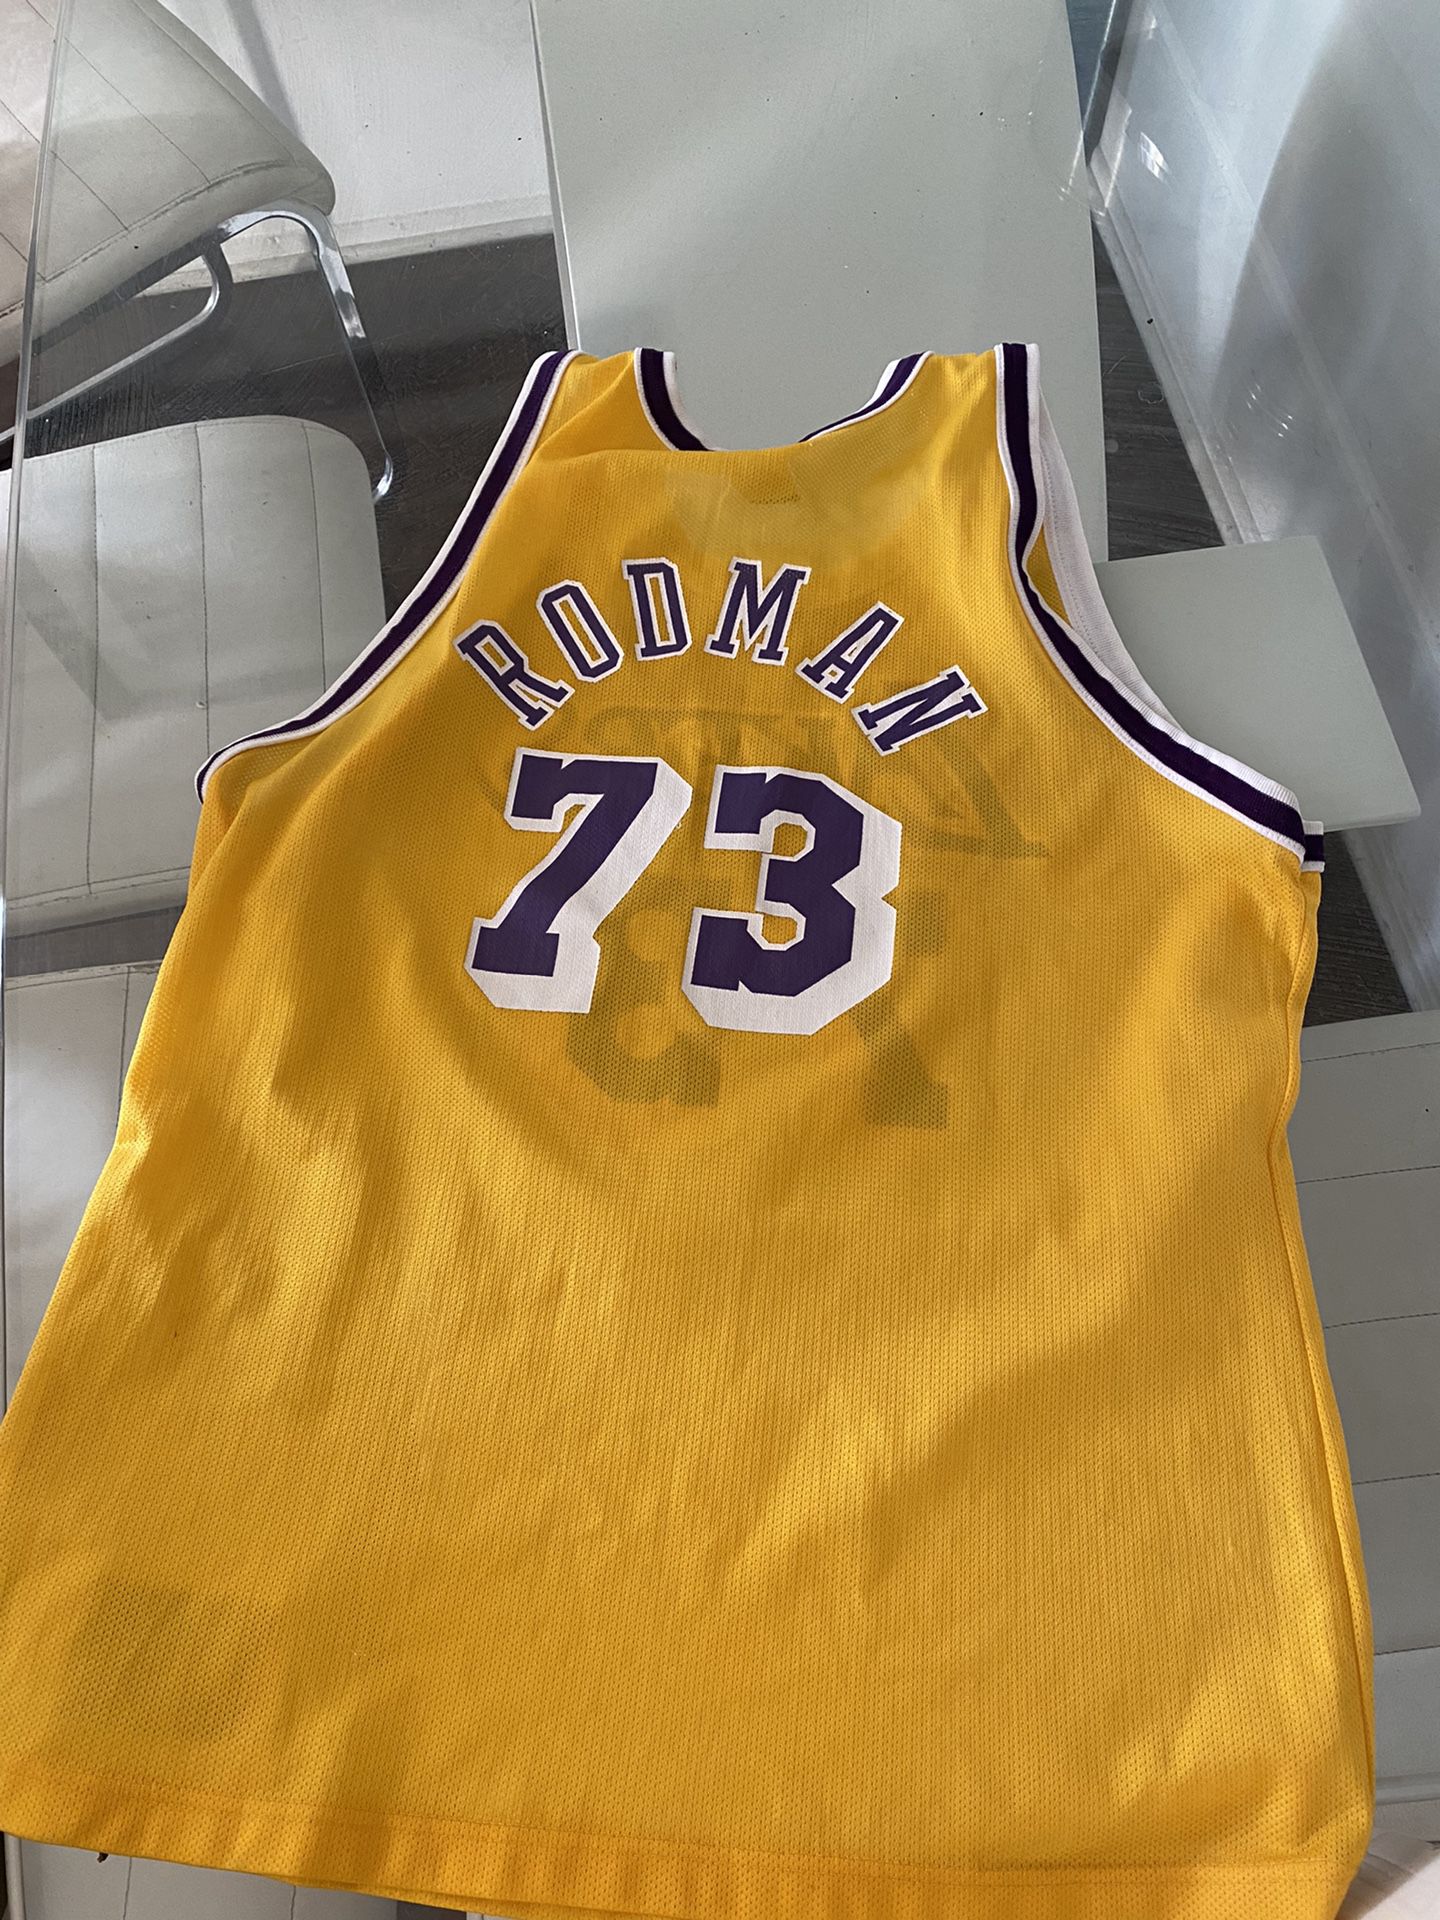 Los Angeles Lakers Dennis Rodman #73 Swingman XL for Sale in Houston, TX -  OfferUp